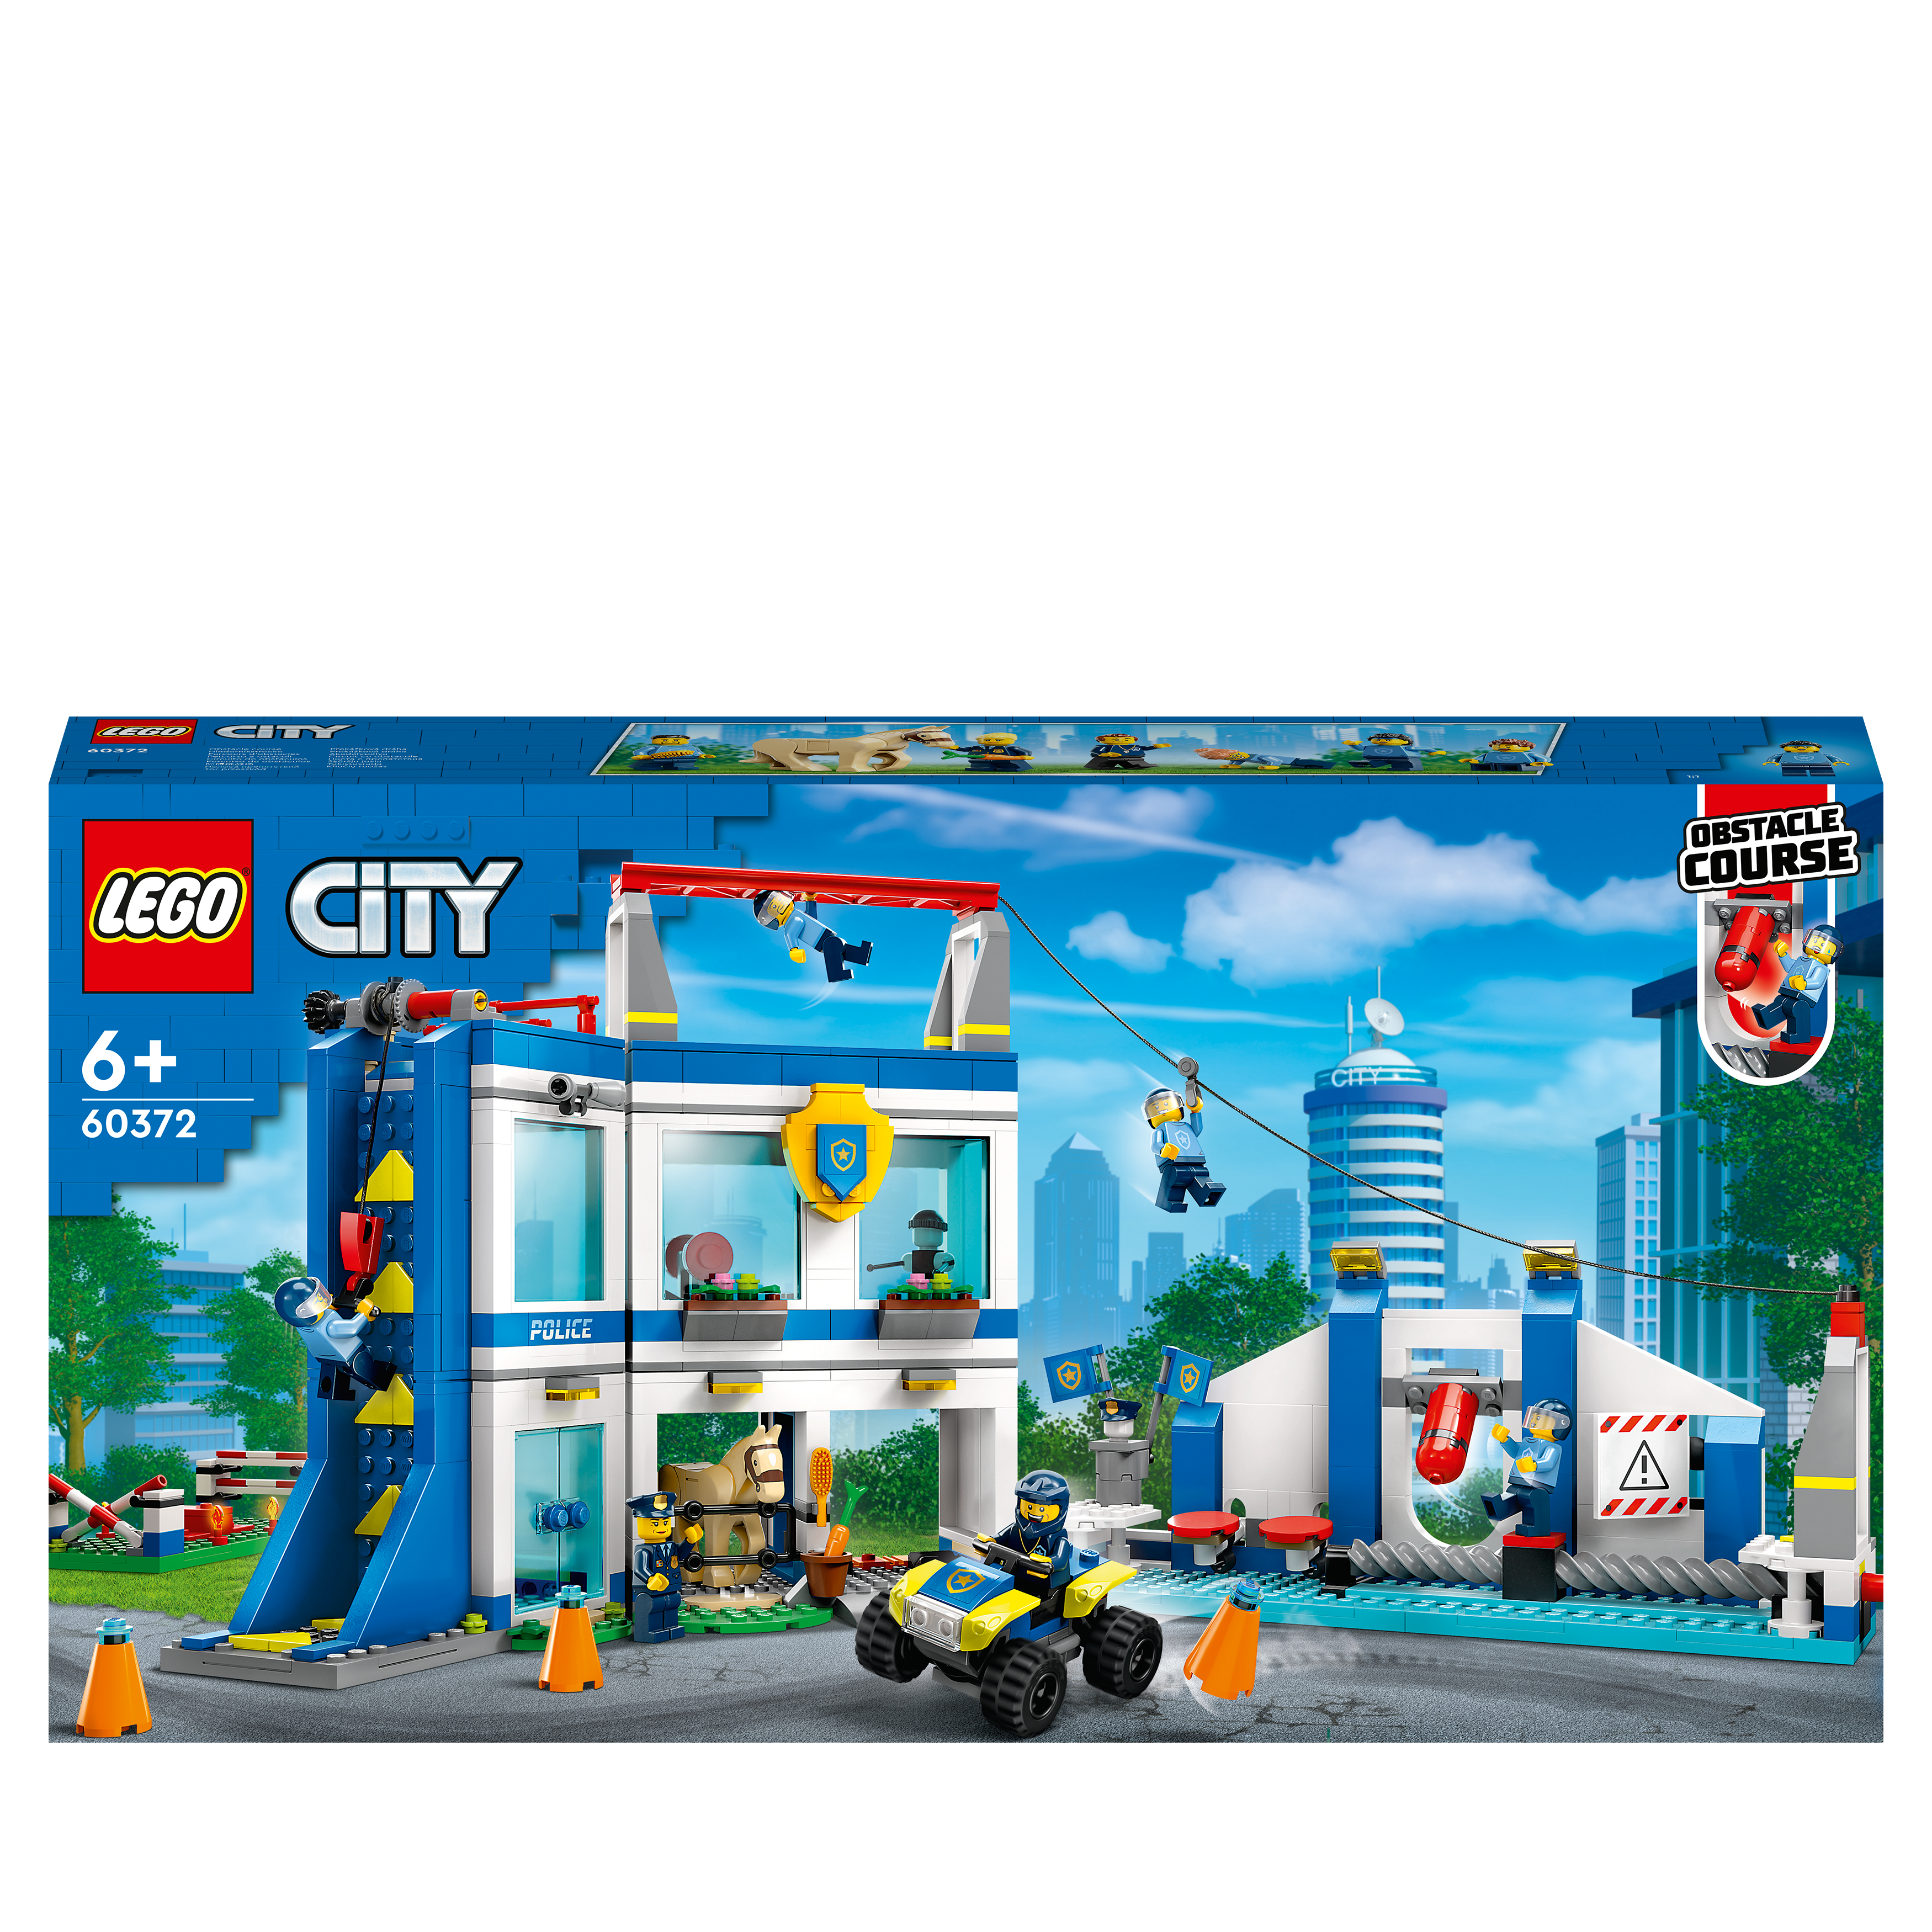 Mehrfarbig City Bausatz, LEGO 60372 Polizeischule